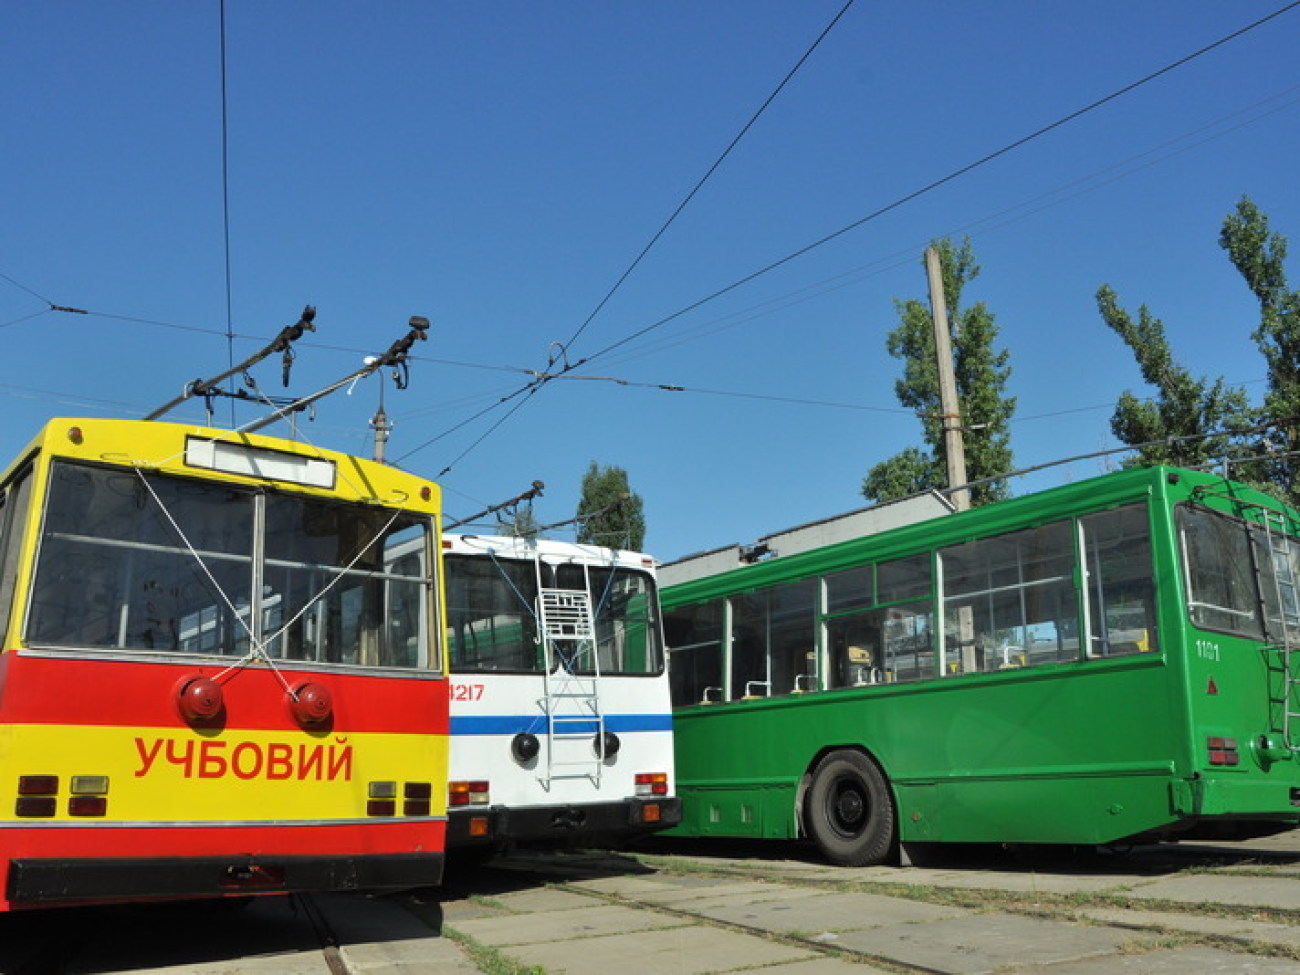 В Киеве открылся Музей городского пассажирского транспорта, 31 августа 2012г.